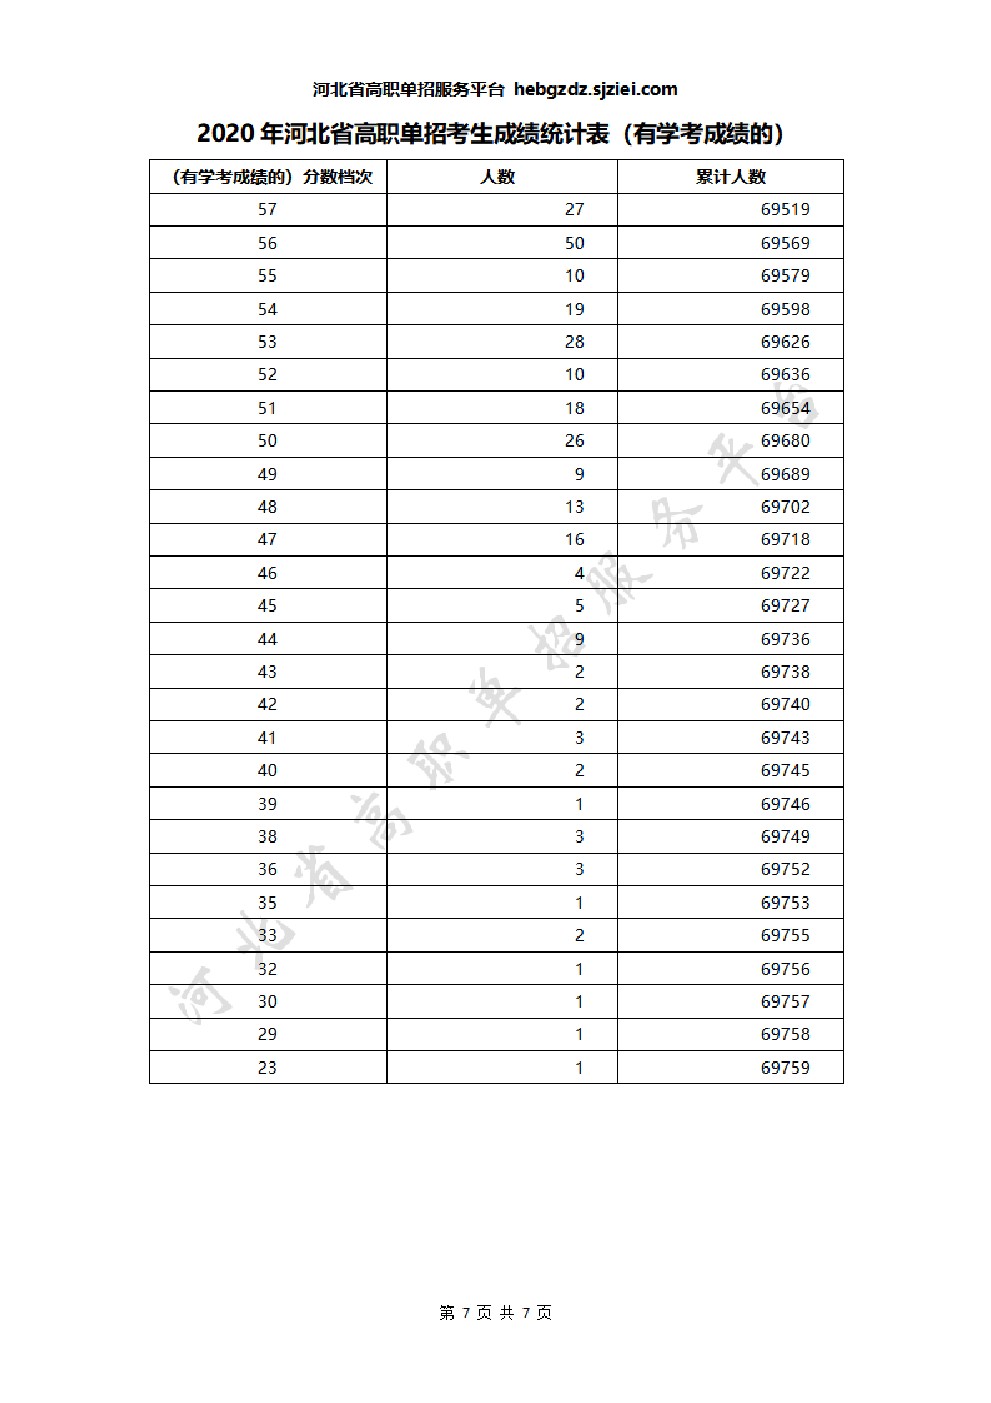 2020年河北省高职单招考生成绩统计表(有学考成绩的) 